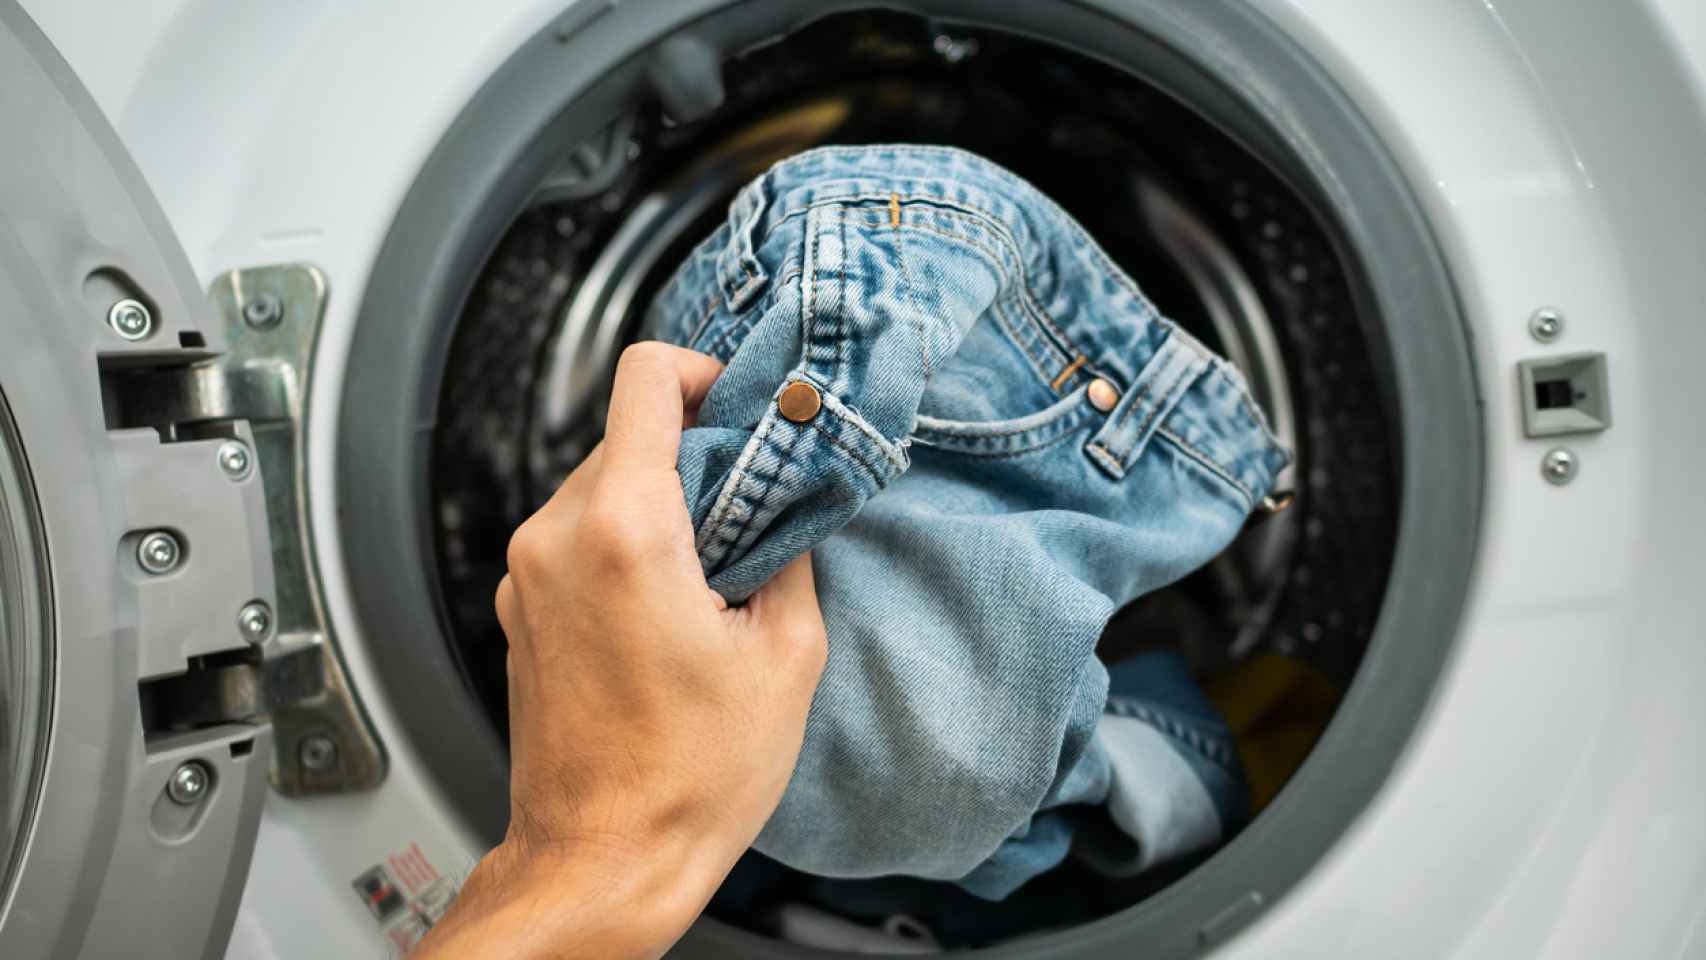 Adiós a la secadora: el truco que arrasa en España para secar todas las prendas en la lavadora